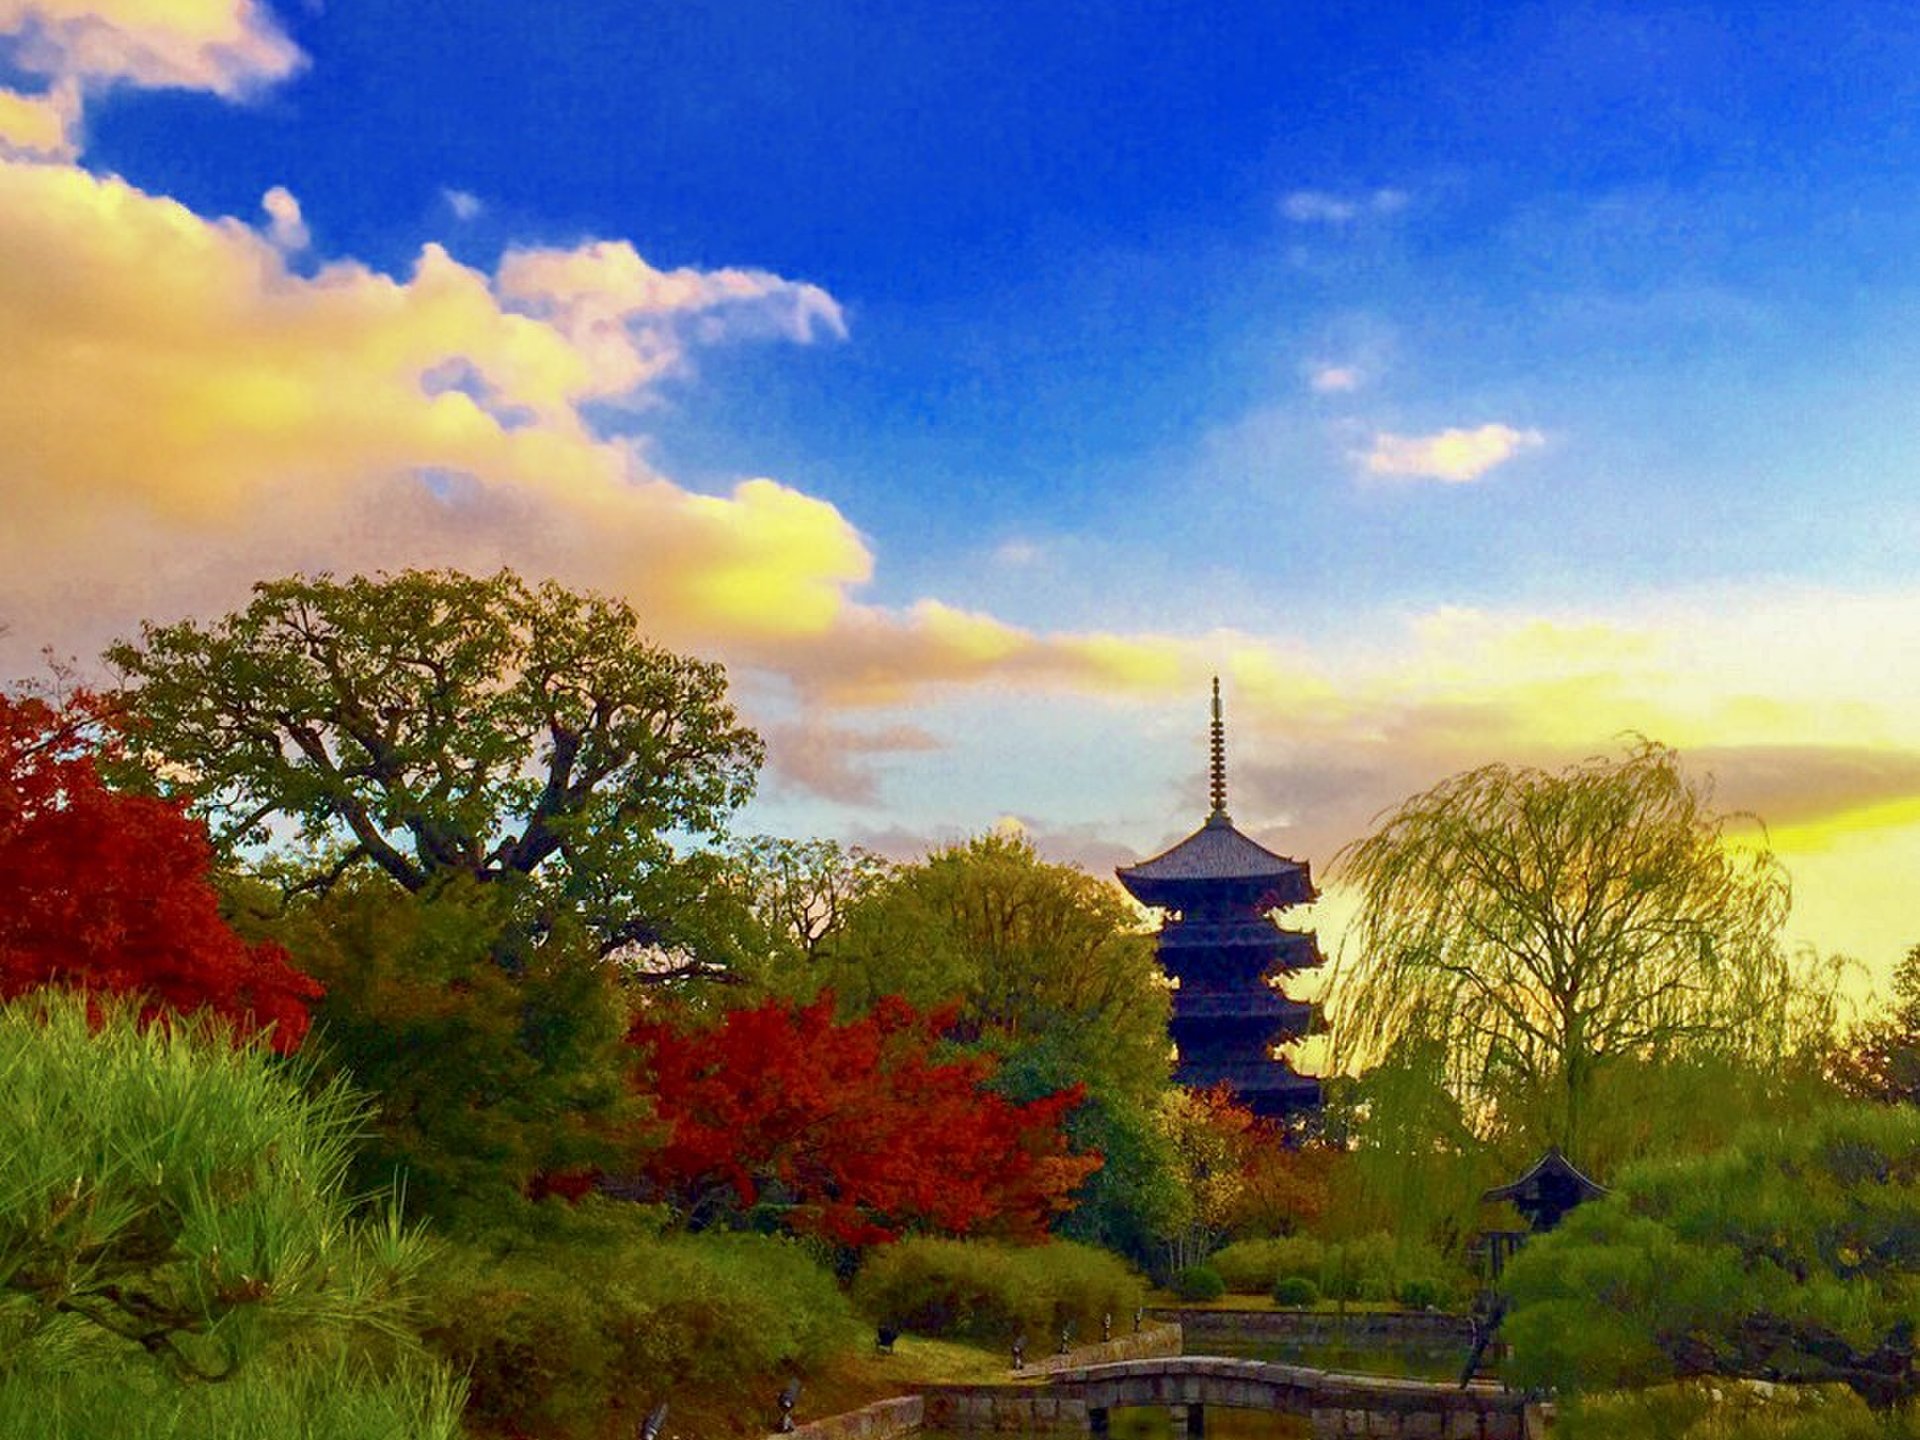 京都フォトジェニックスポット巡り 1日ですべてまわれる 京都で写真を楽しむ旅